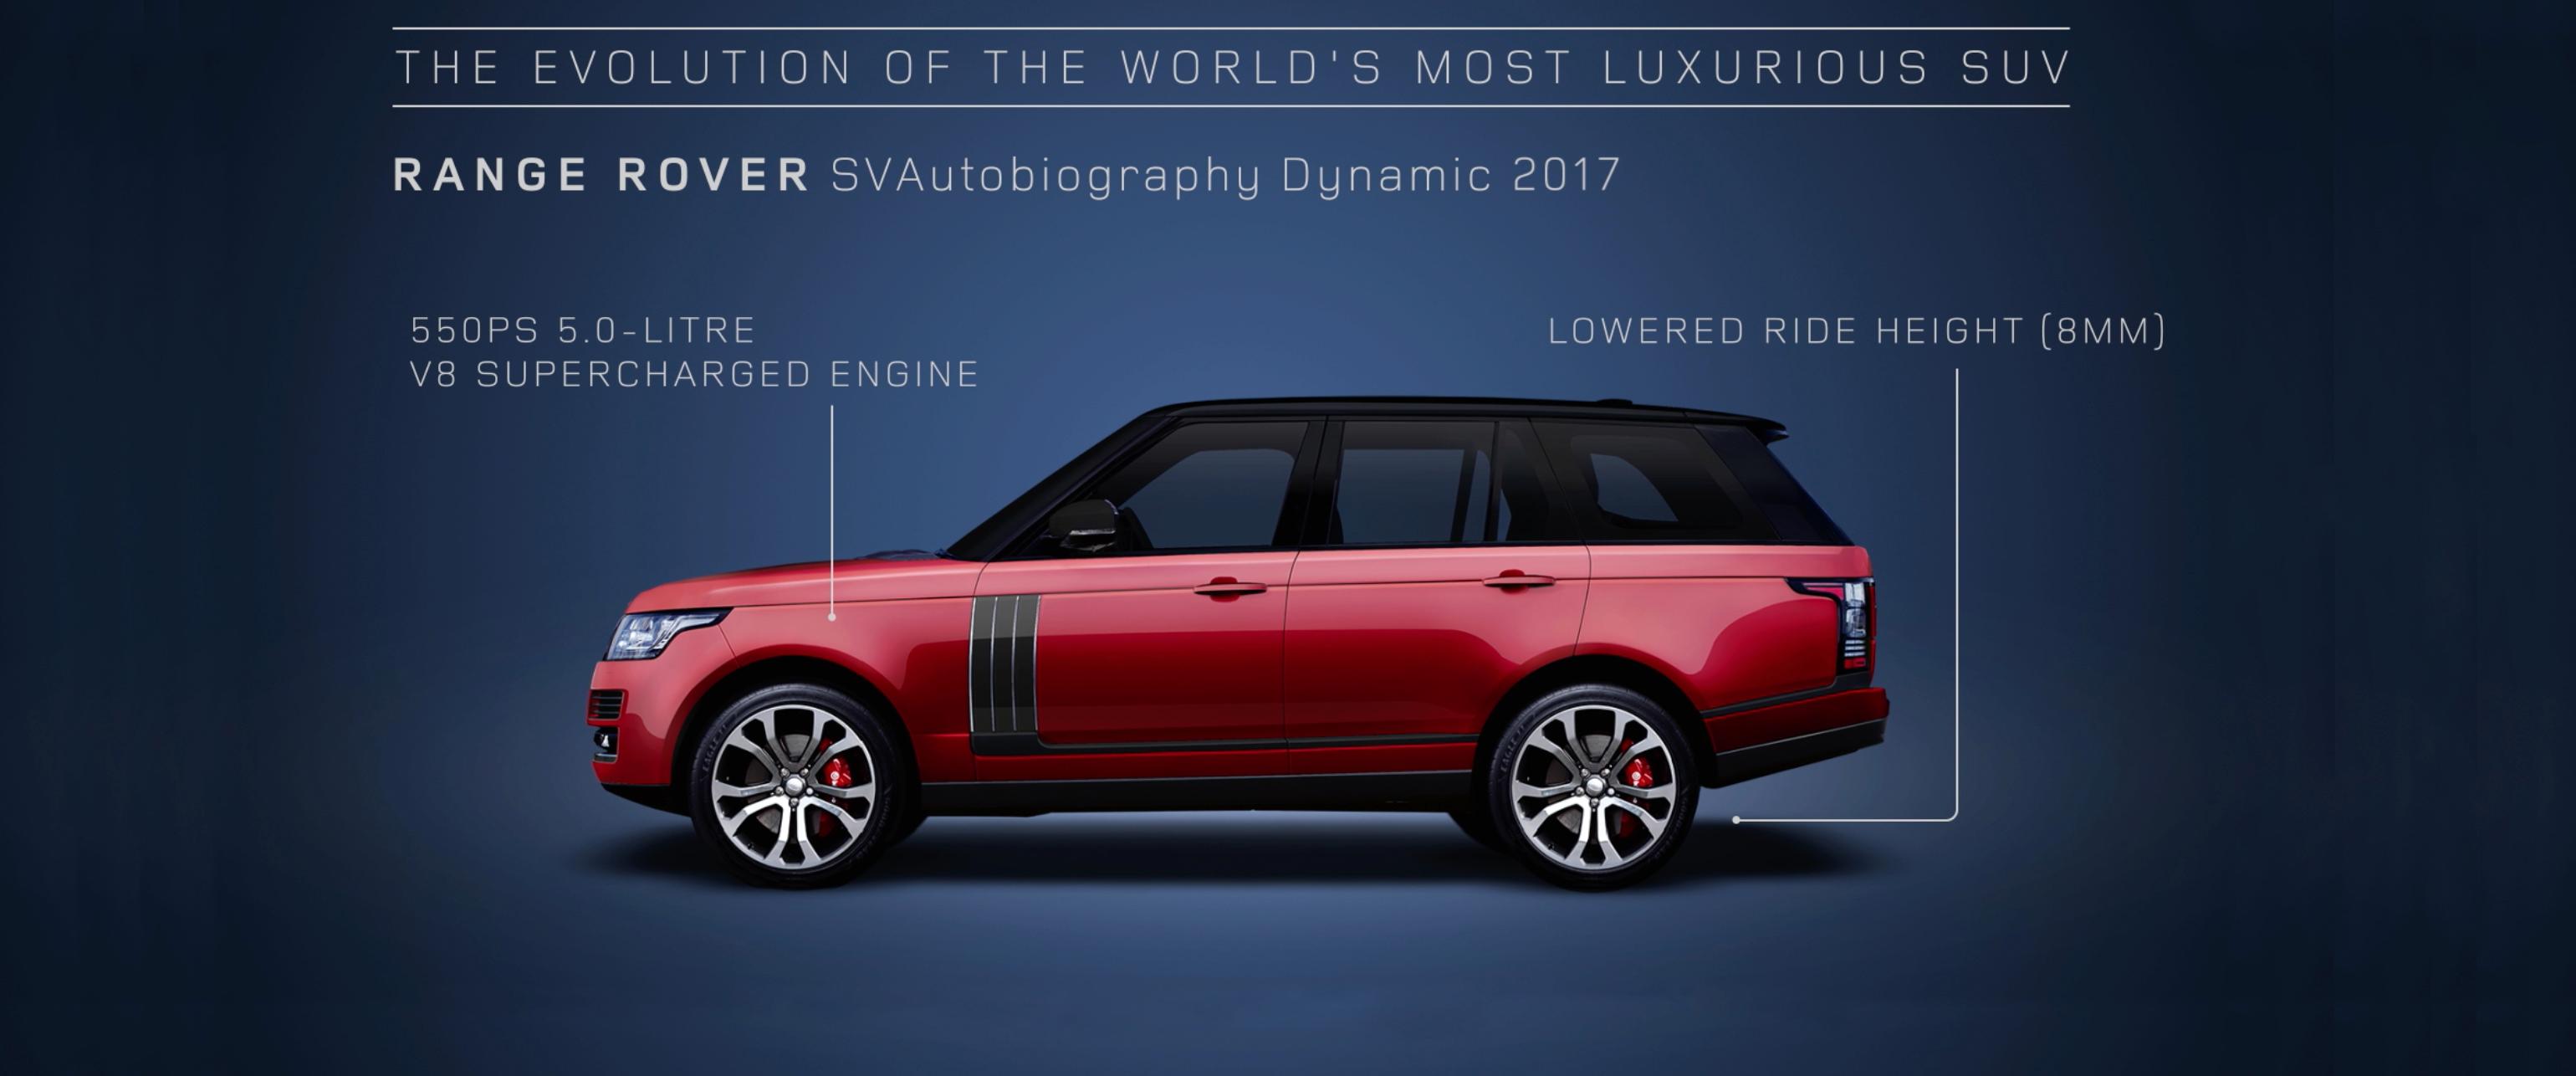 Range Rover celebra in video 48 anni di evoluzione